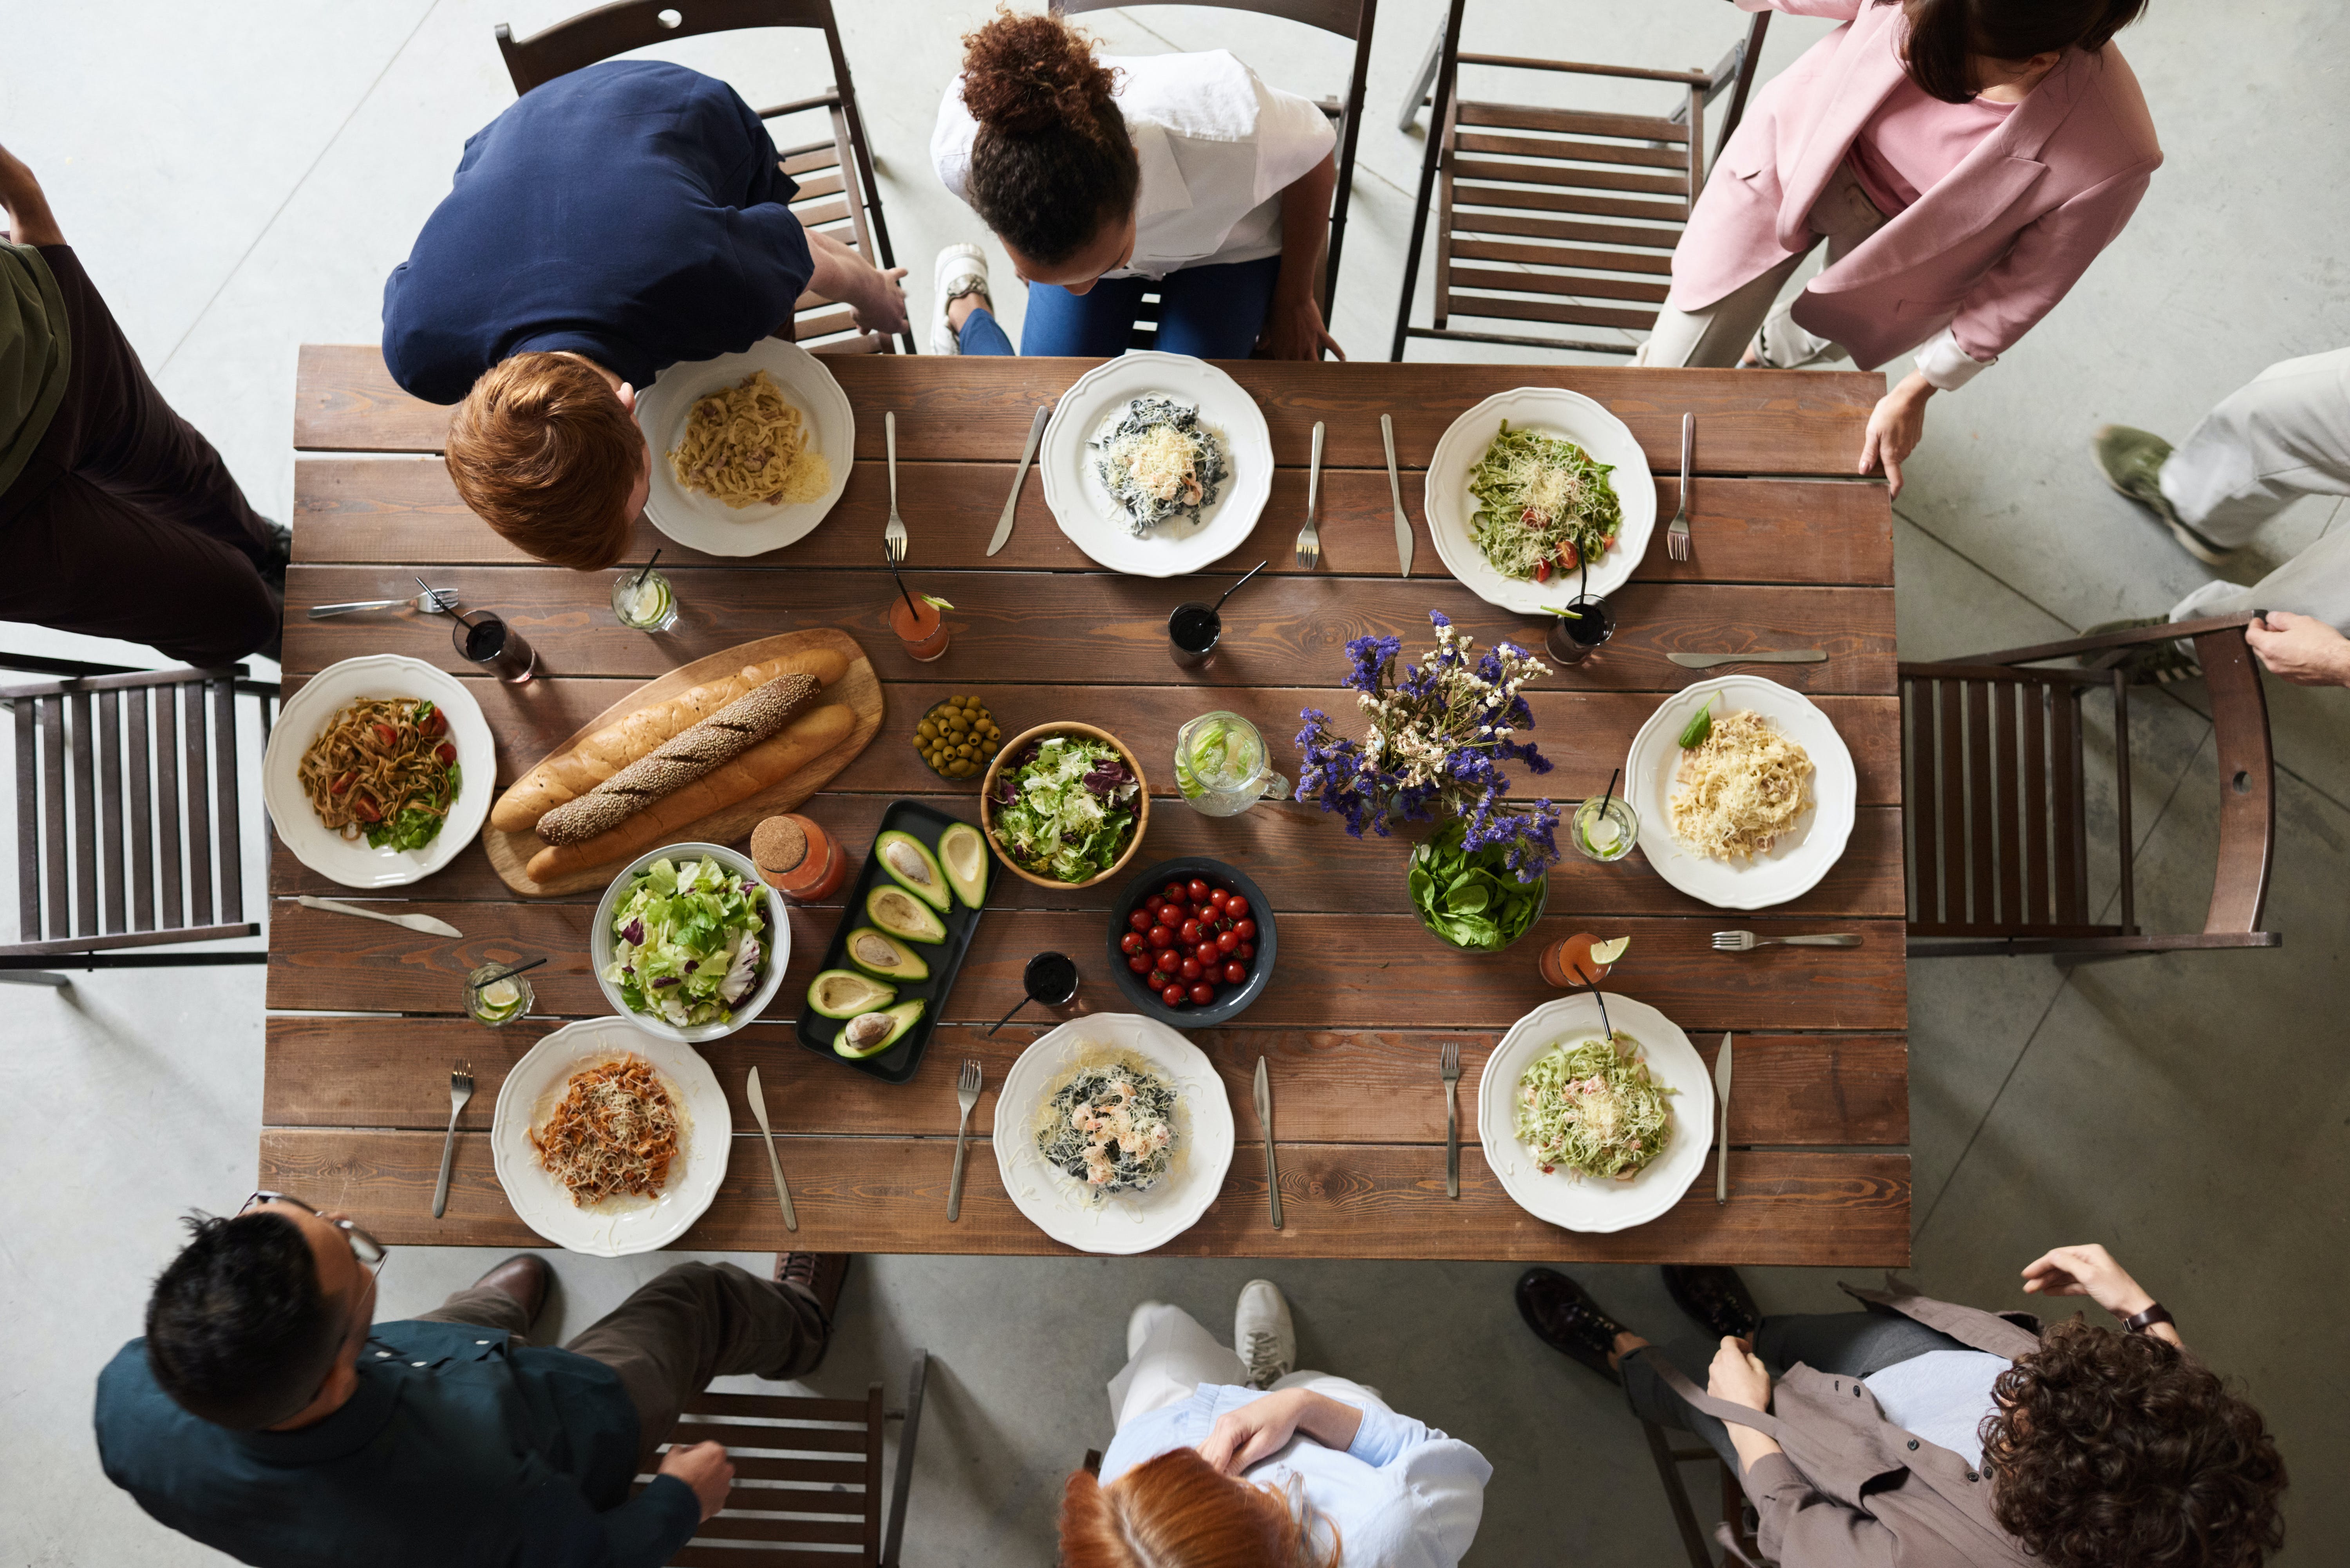 Des amis partageant un repas ensemble | Source : Pexels